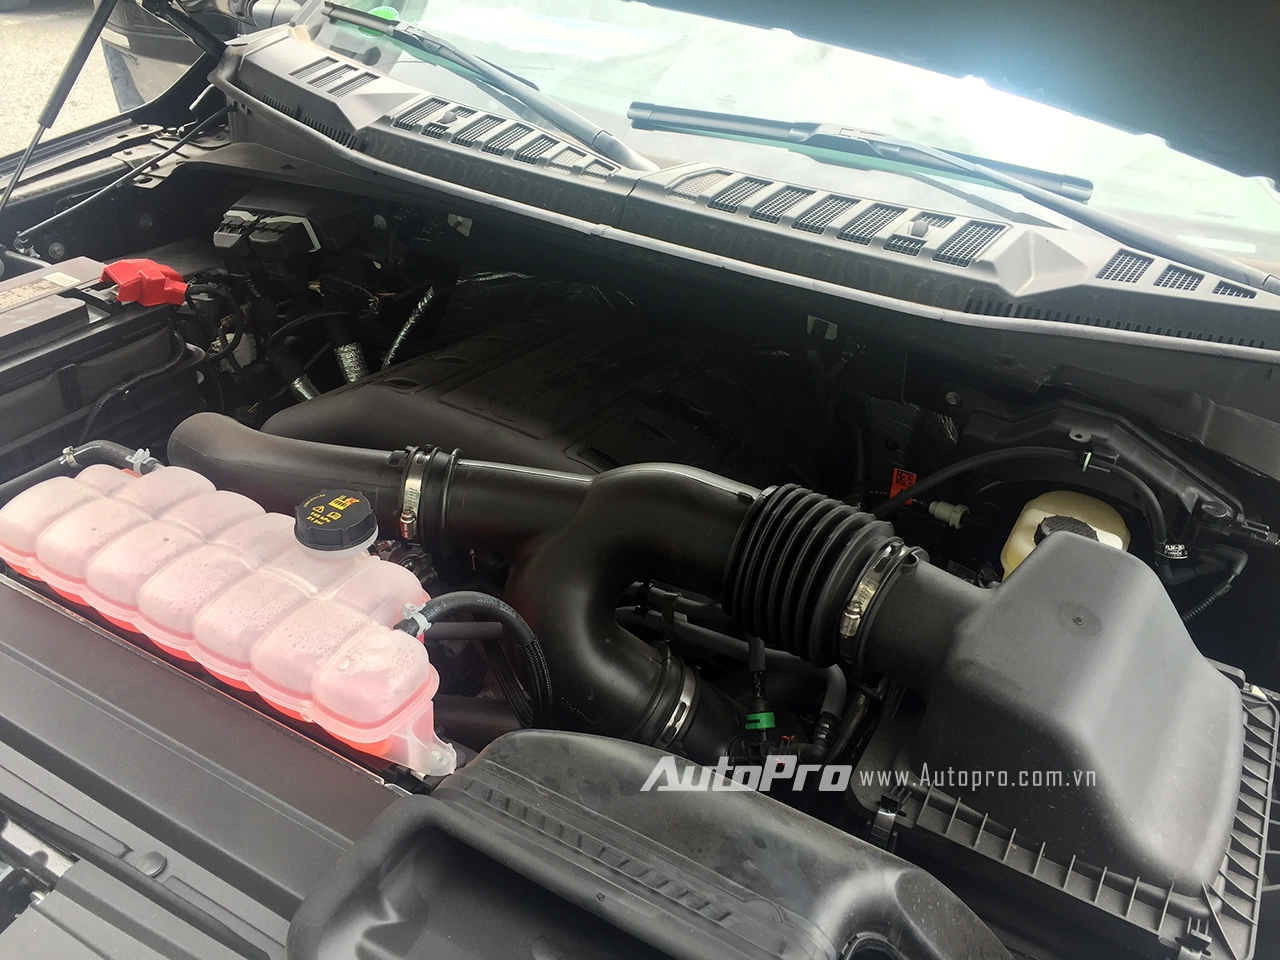 
Khối động cơ V6 mang công nghệ Ecoboost với dung tích 3.5L dưới nắp capo của Ford F-150 Limited.
